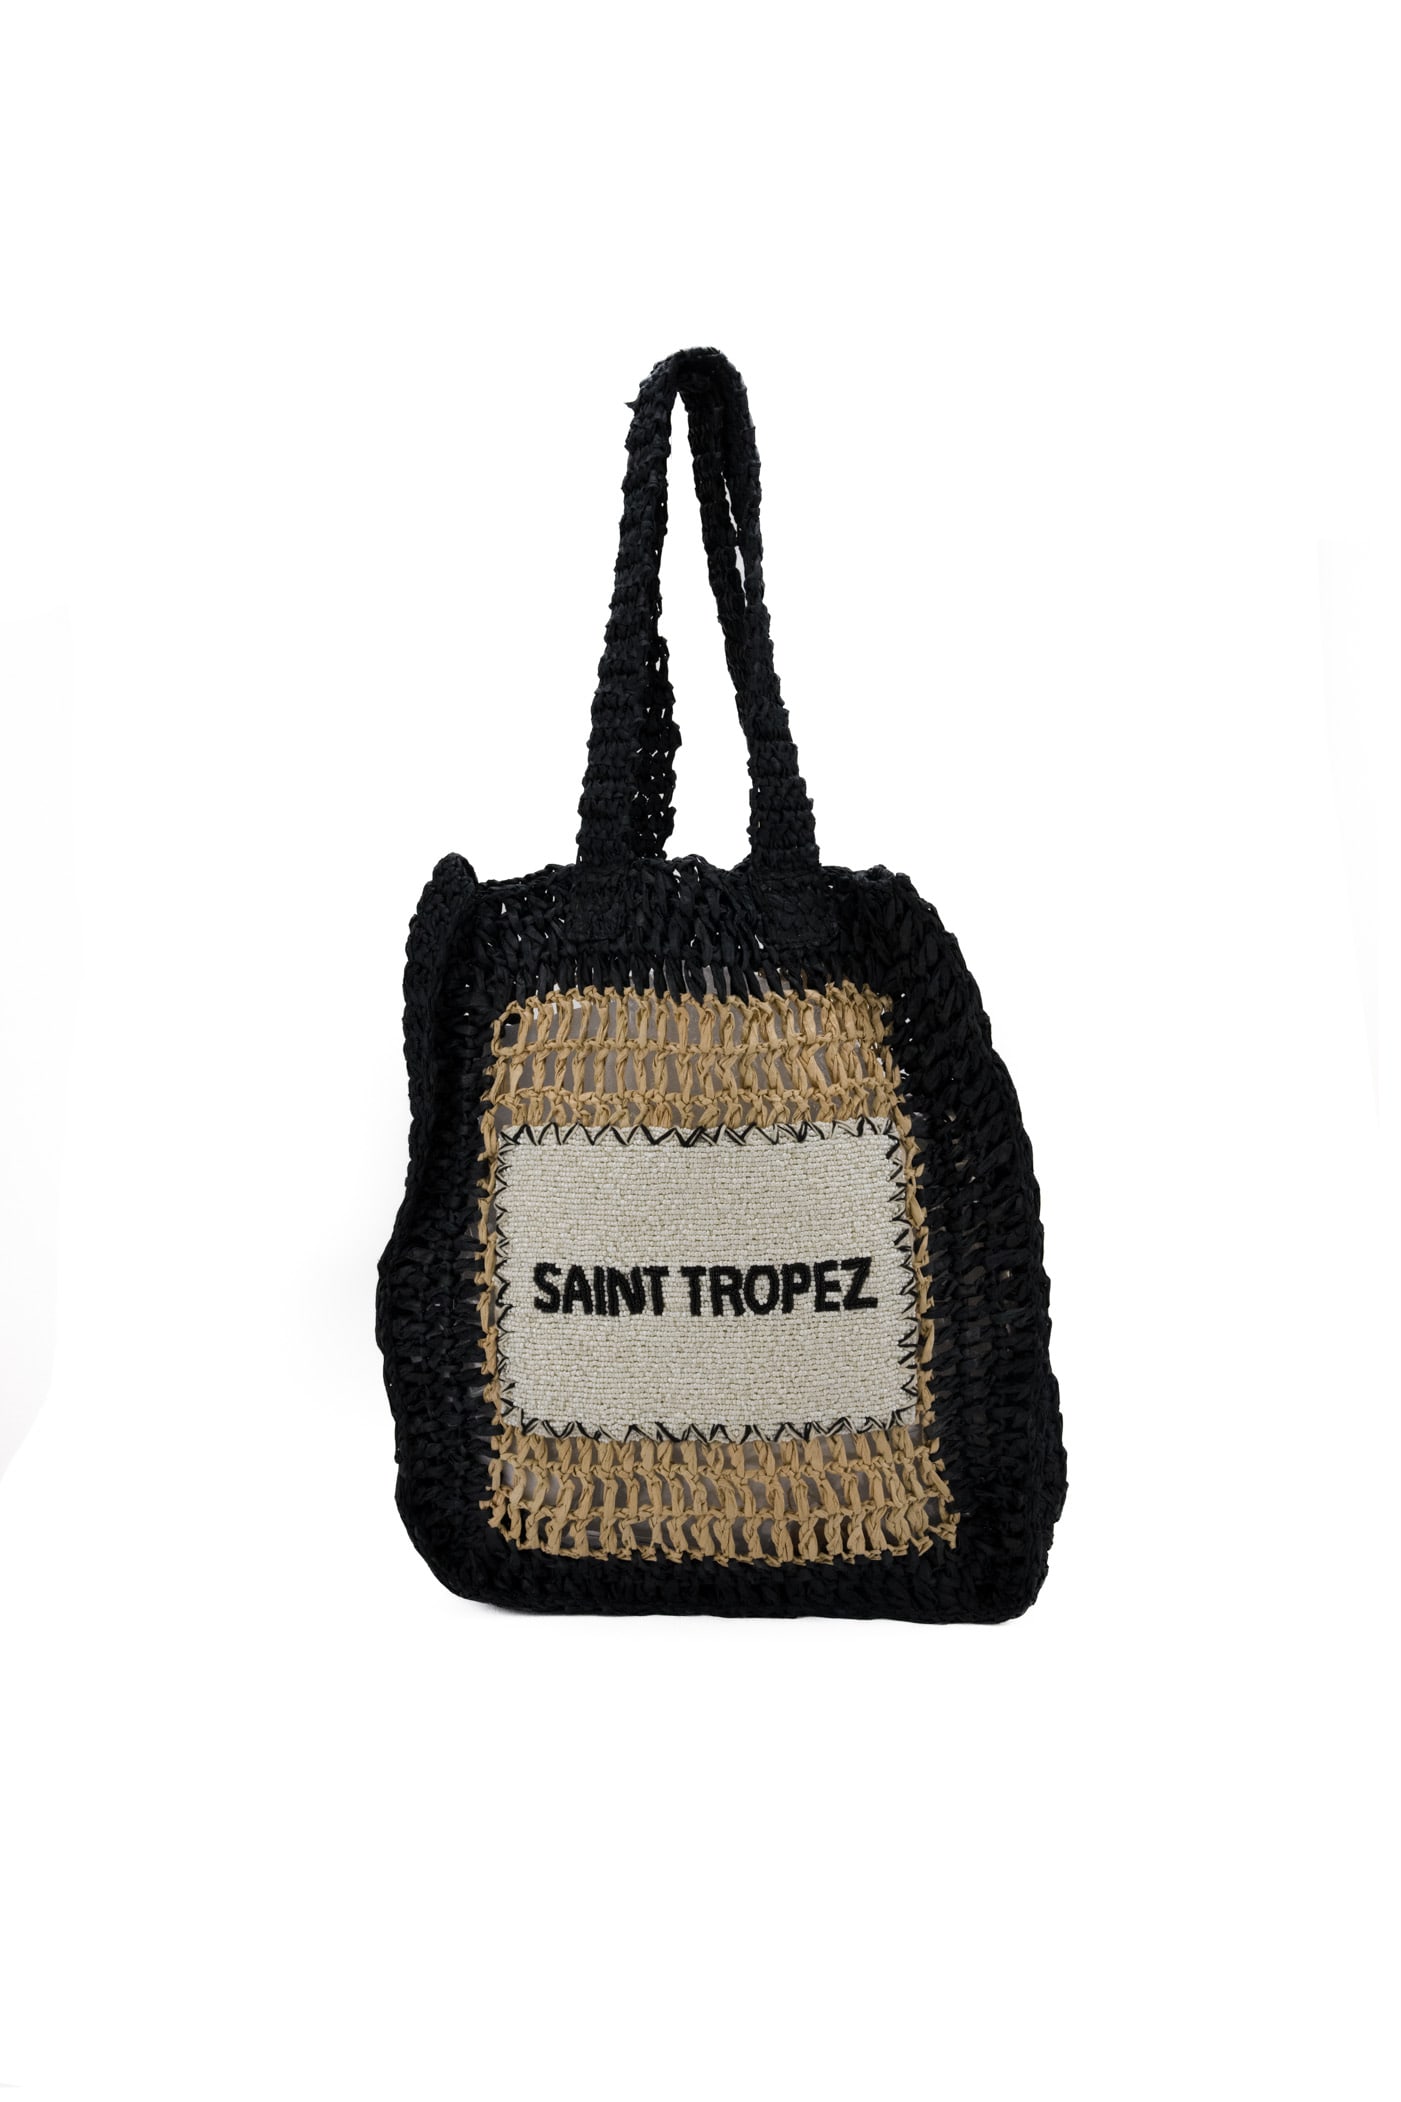 Saint Tropez Black Bag